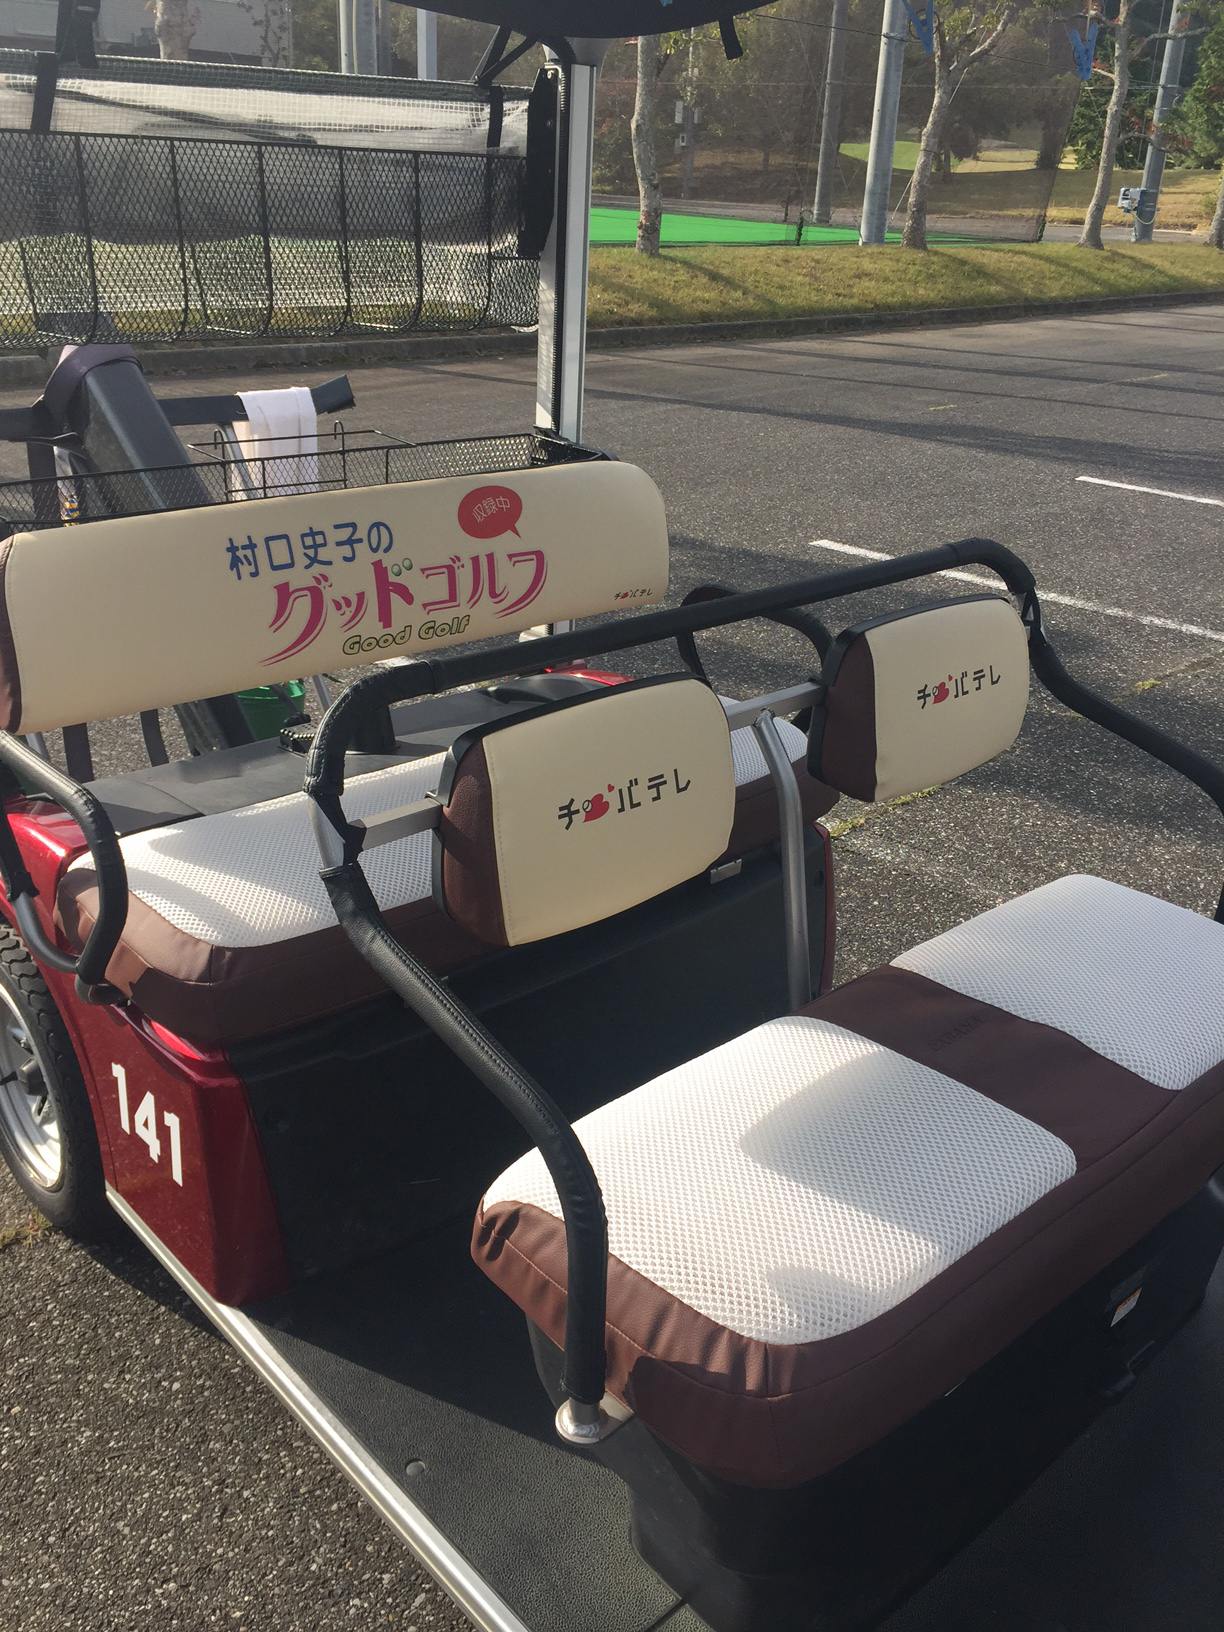 村口史子グッドゴルフのスポンサープリントを施したゴルフカートシートカバー